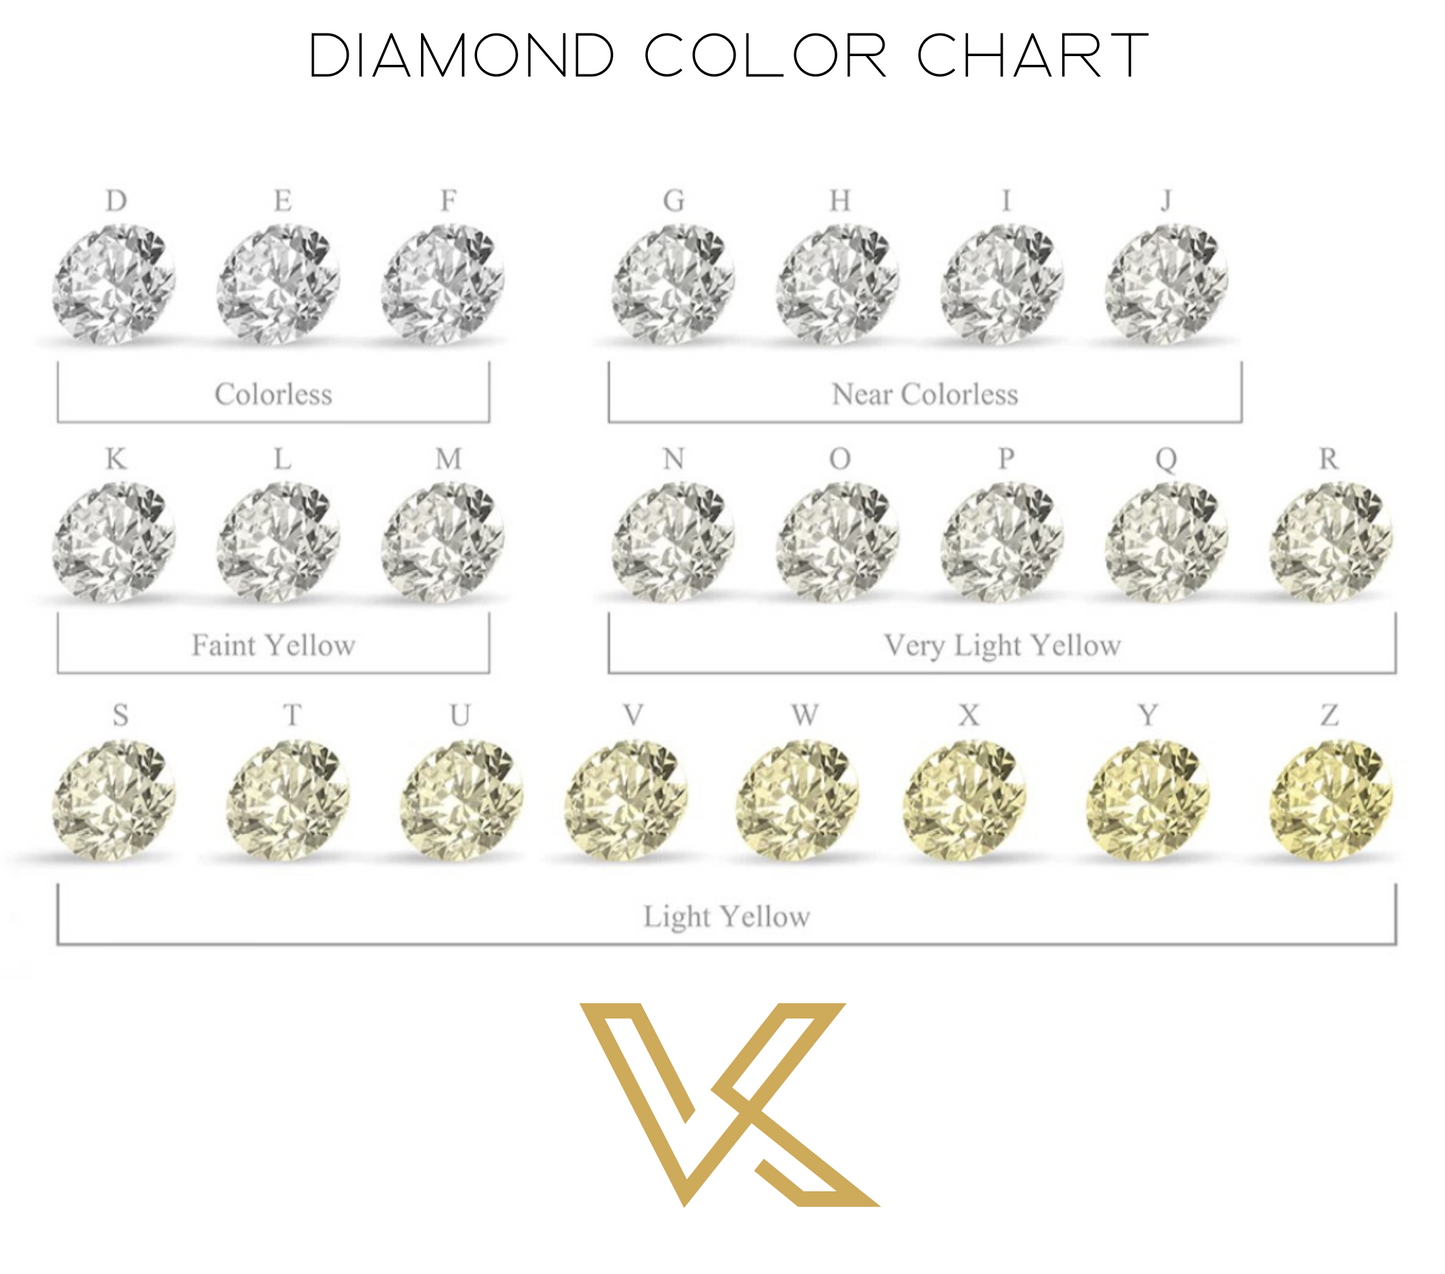 Loose Diamond 0.87 Carat. Pear Shape. D VS1 - IGI Certified